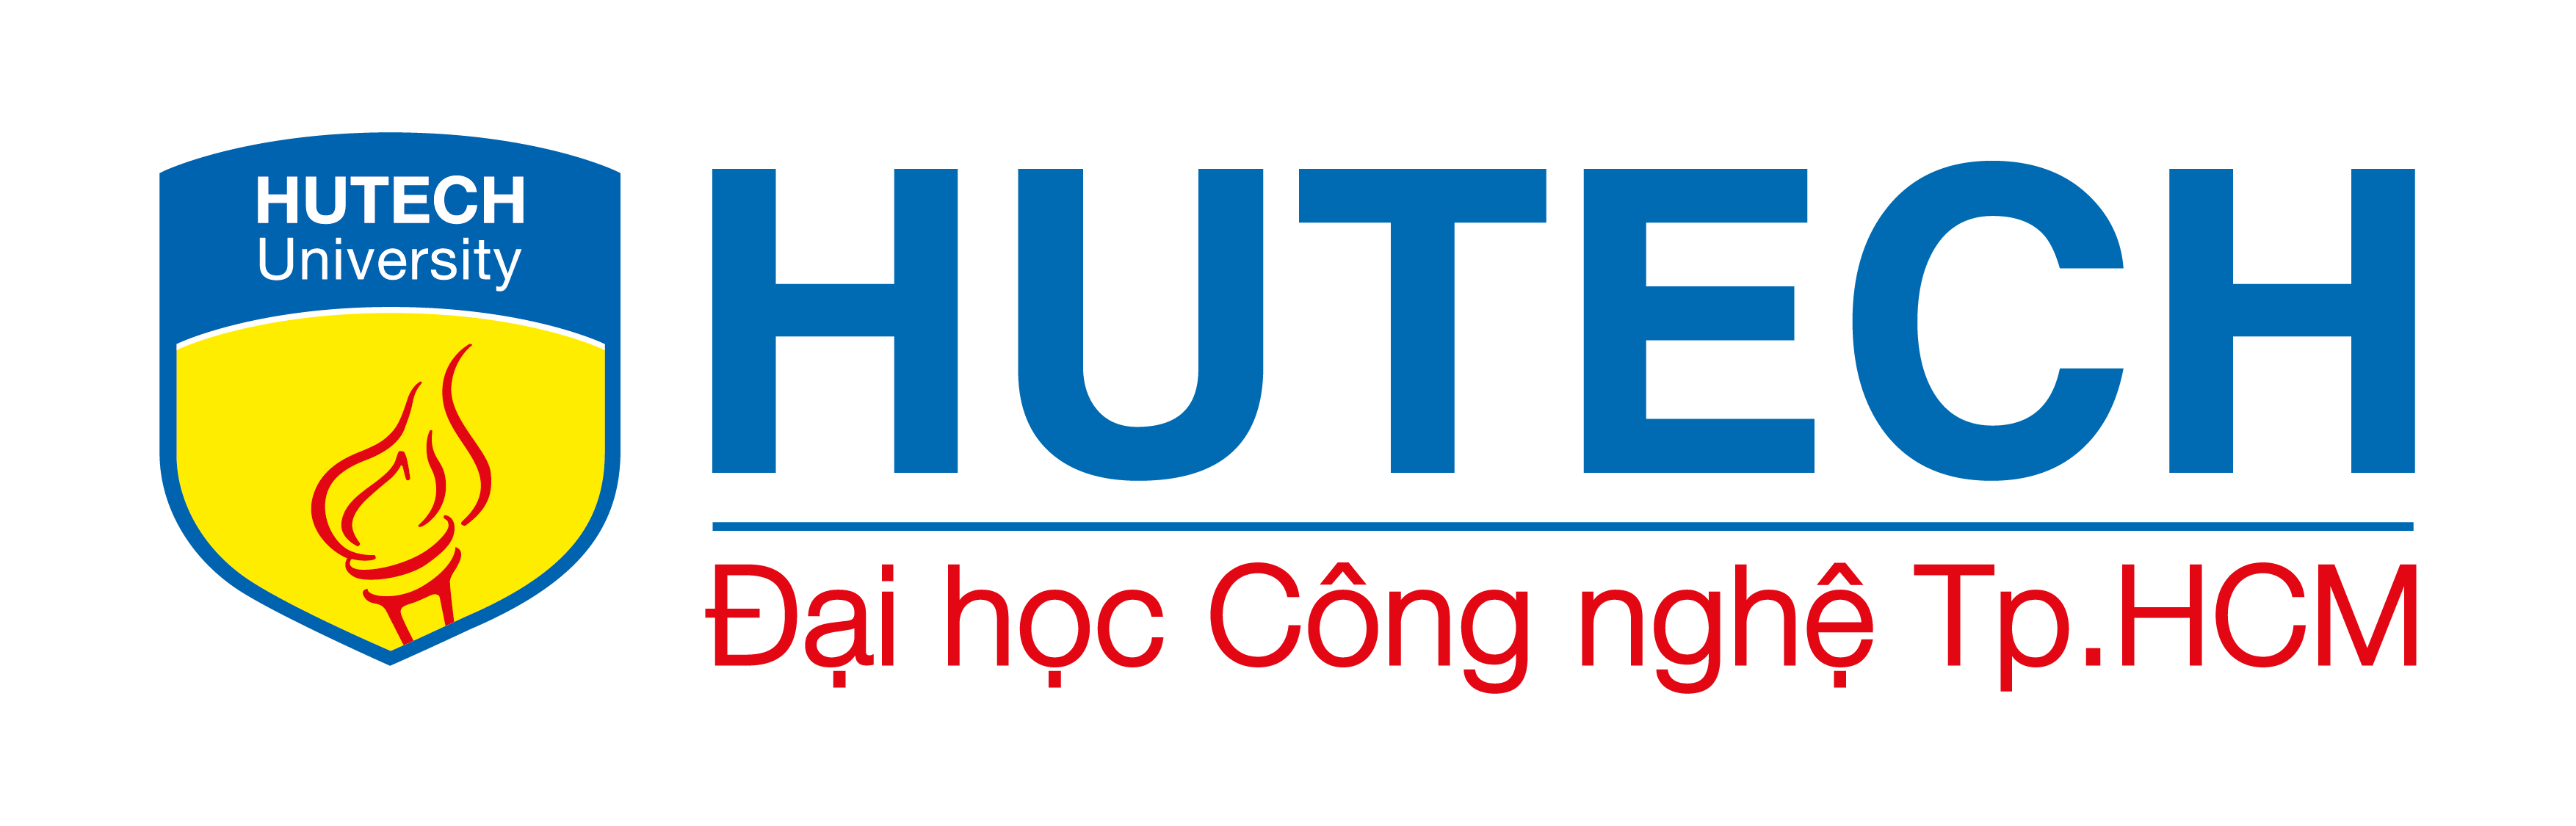 hutech.png